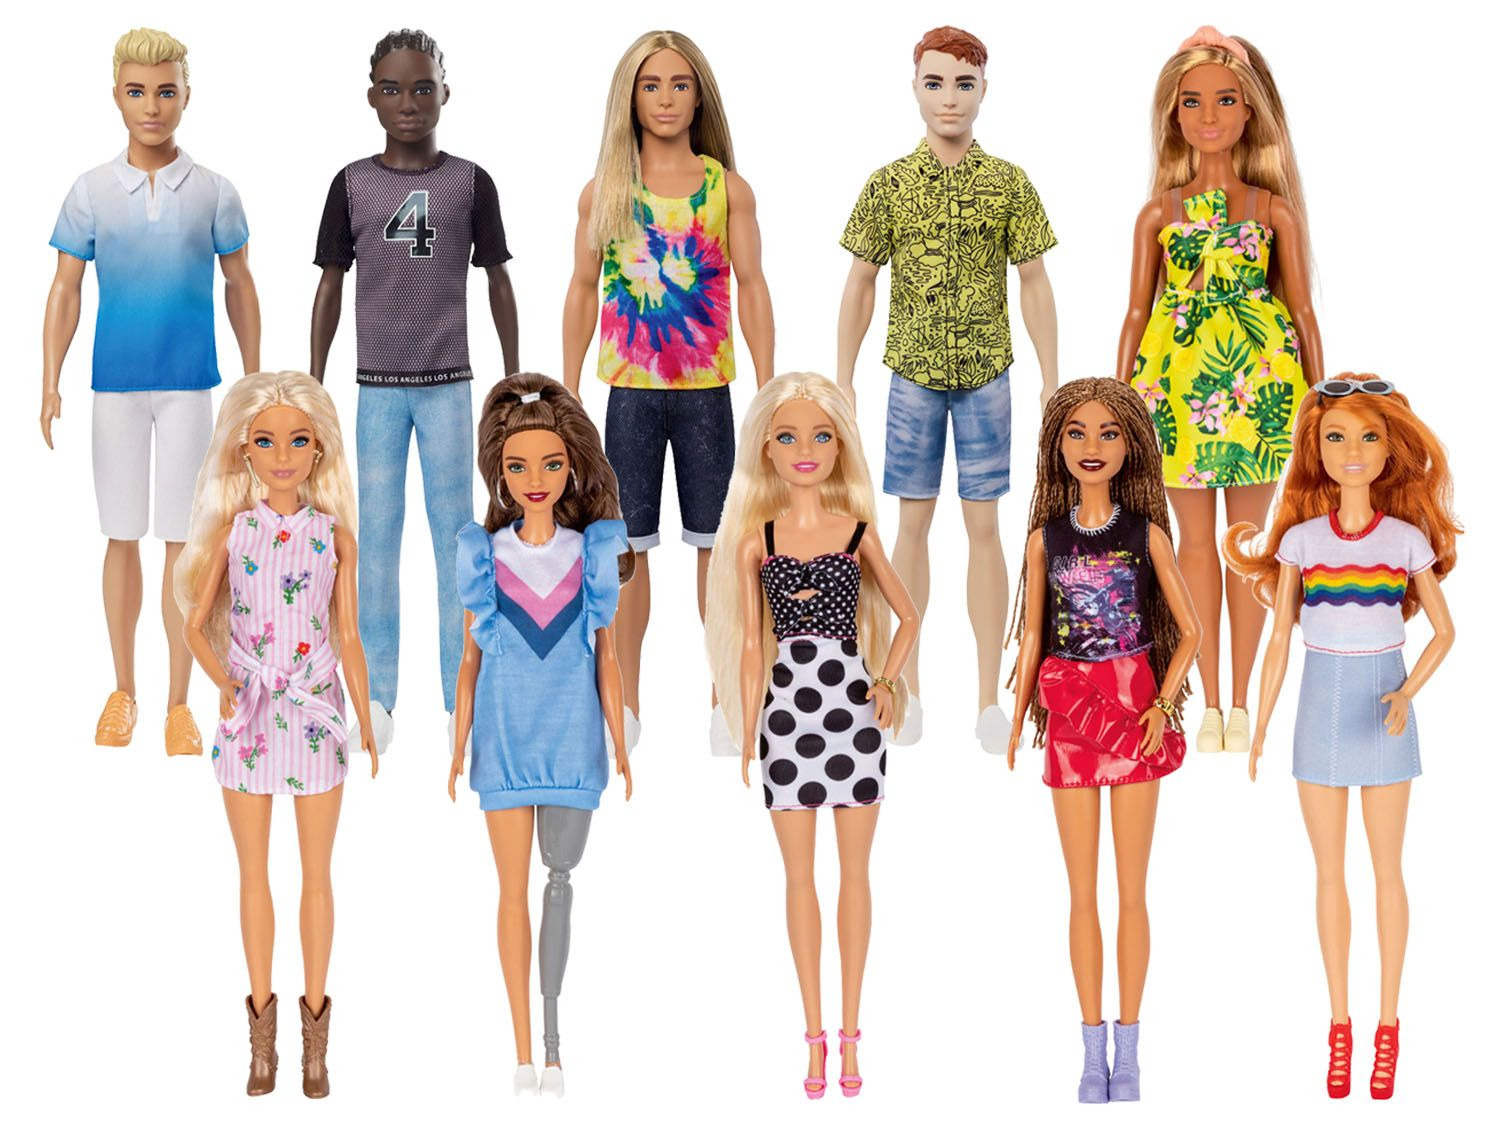 Omtrek Wrak barricade Barbie/Ken Fashionistas kopen? | LIDL